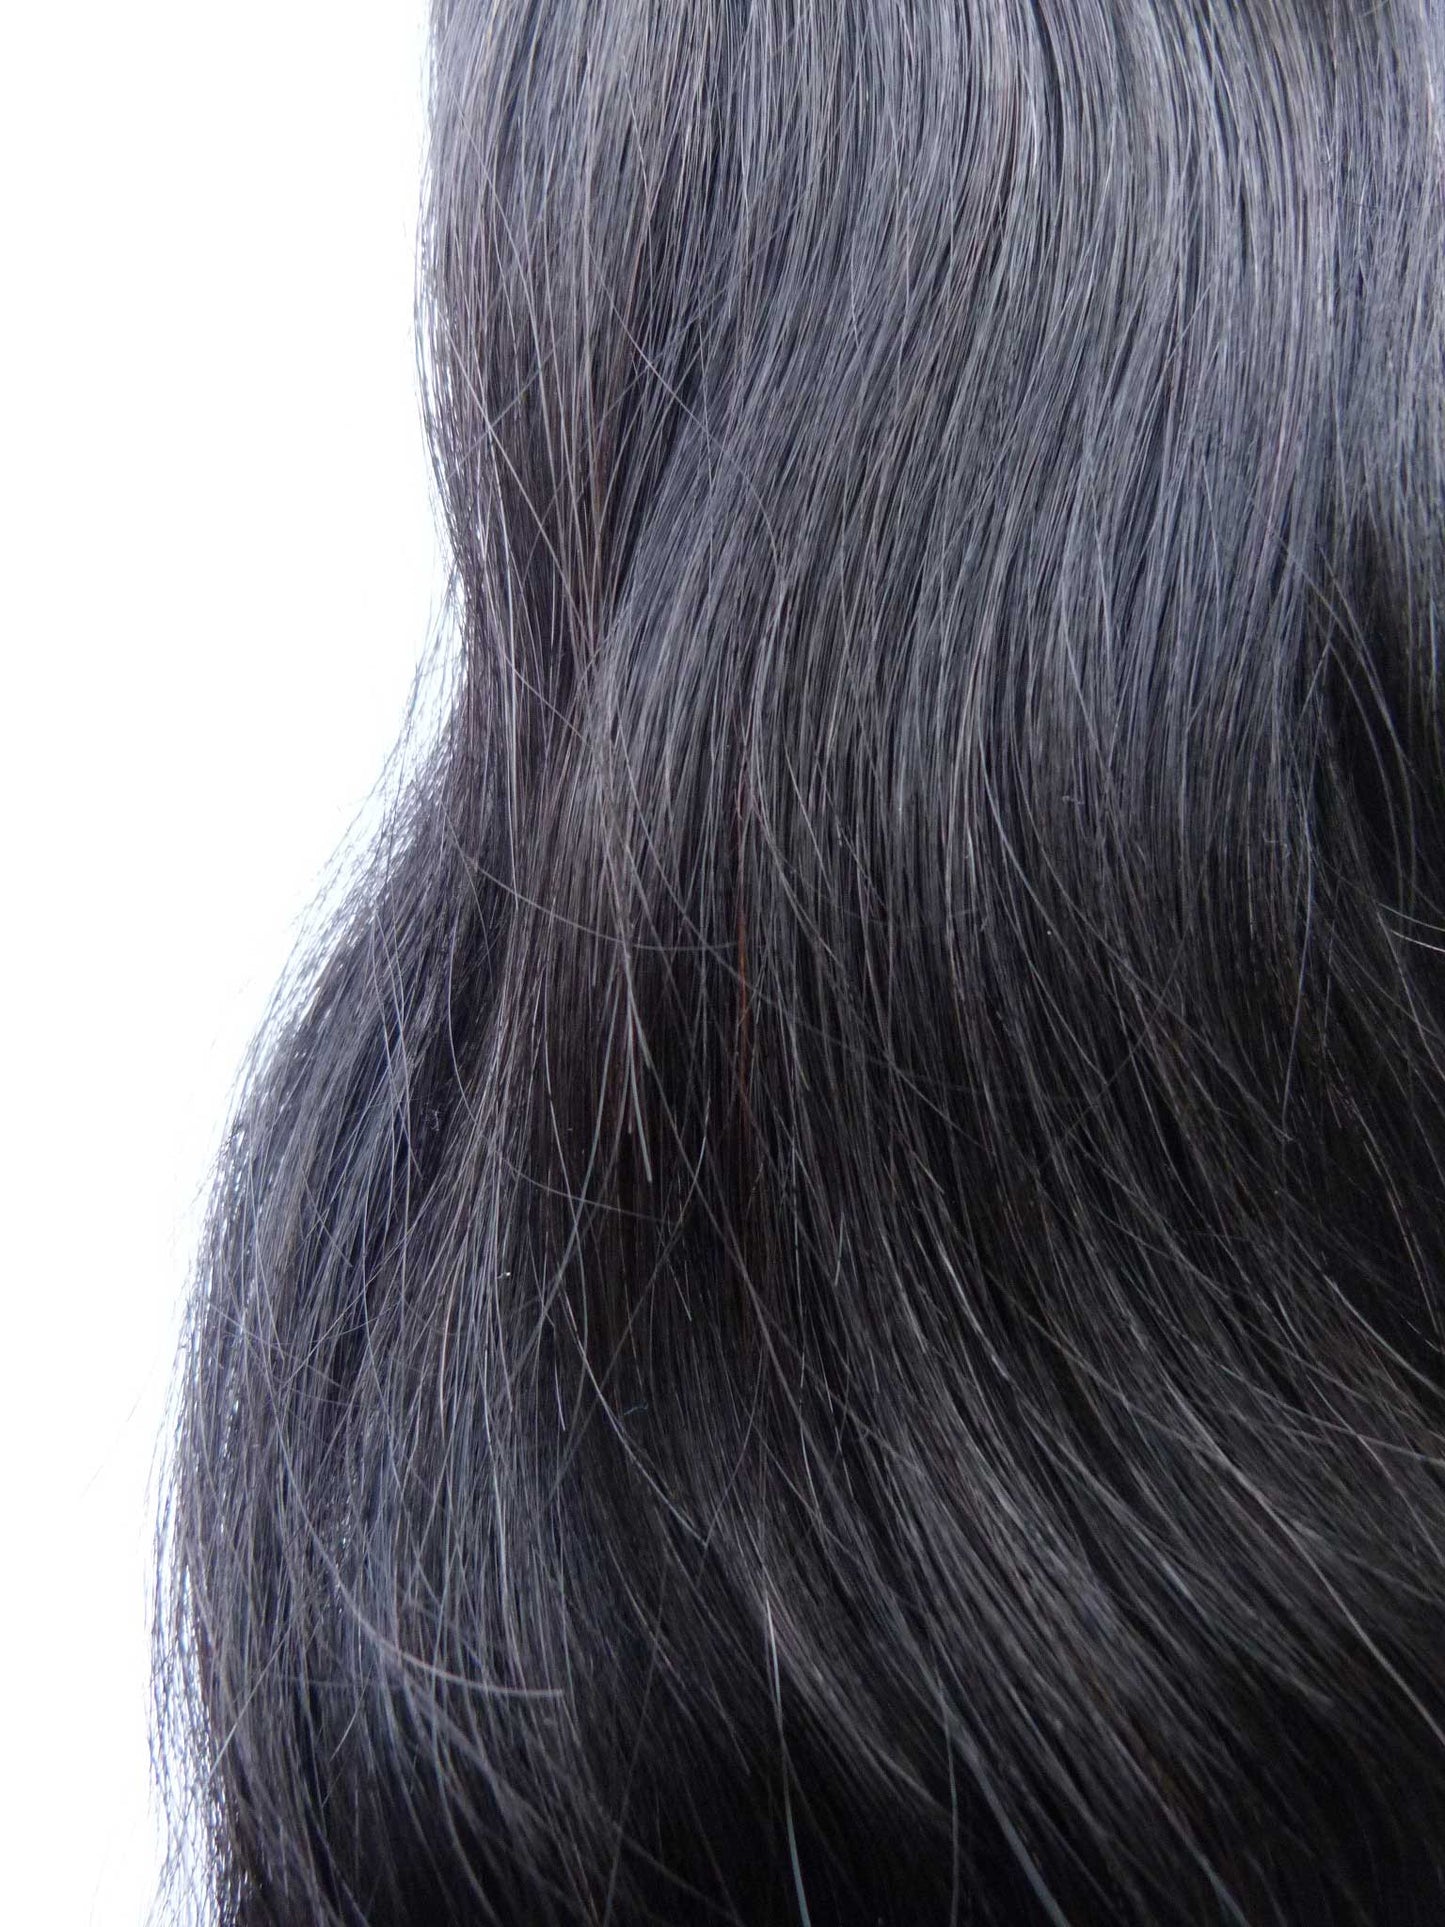 Extensions de cheveux humains vierges européens - extensions à micro-boucles - cheveux vierges et beauté, les meilleures extensions de cheveux, de vrais cheveux humains vierges.